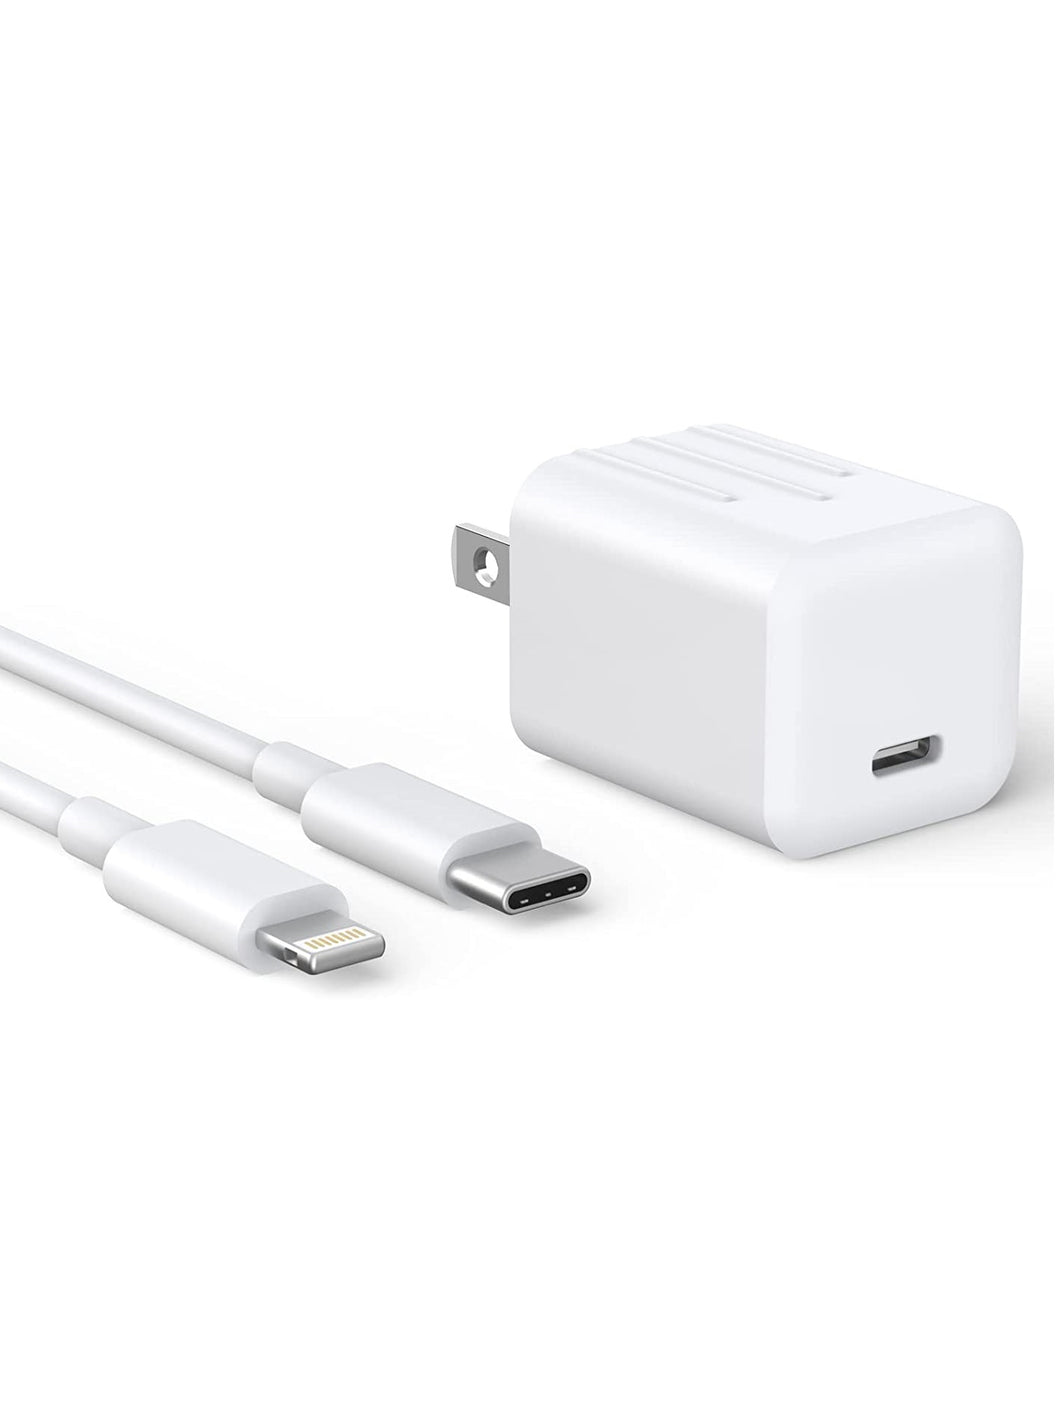 Cargador rápido para iPhone, [certificado Apple MFi] 20 W, tipo C, con cable USB-C a Lightning de 6 pies.